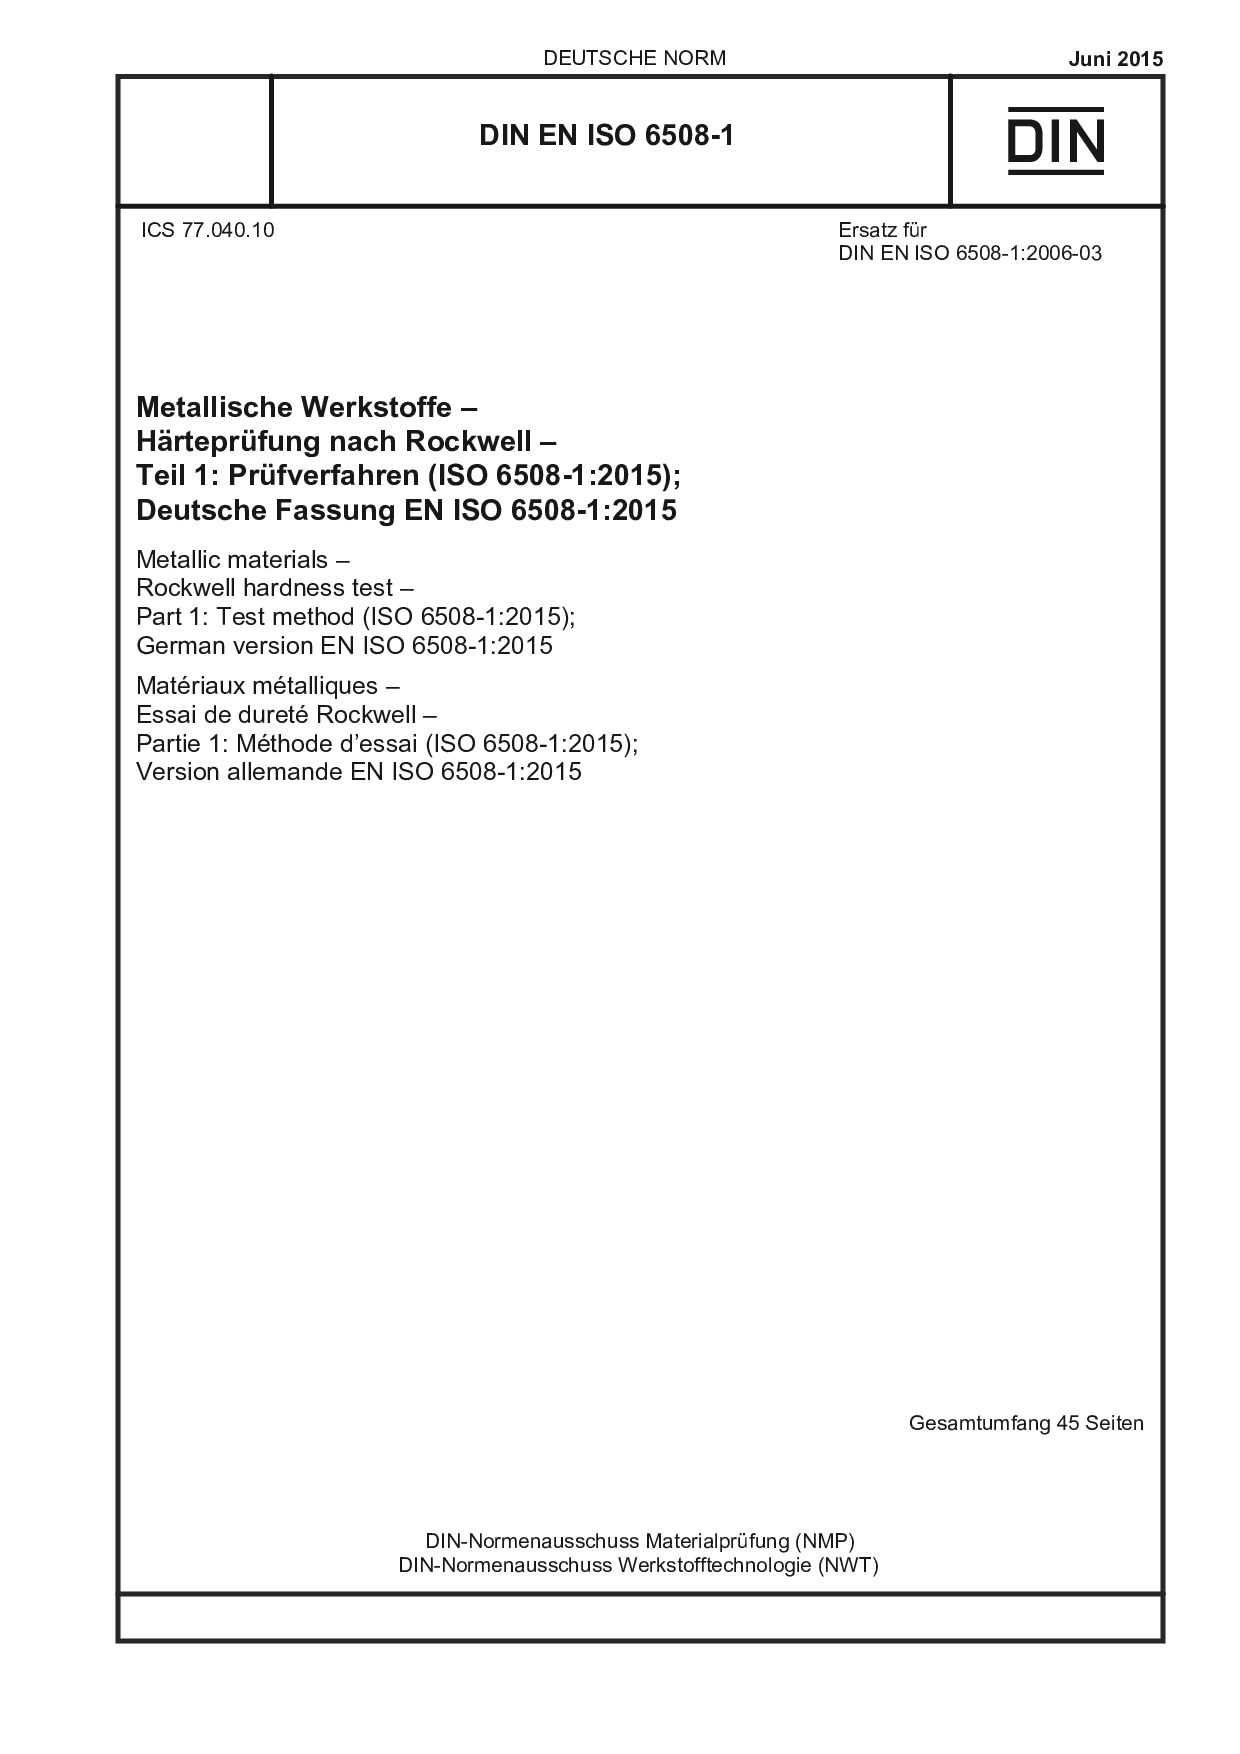 DIN EN ISO 6508-1:2015封面图